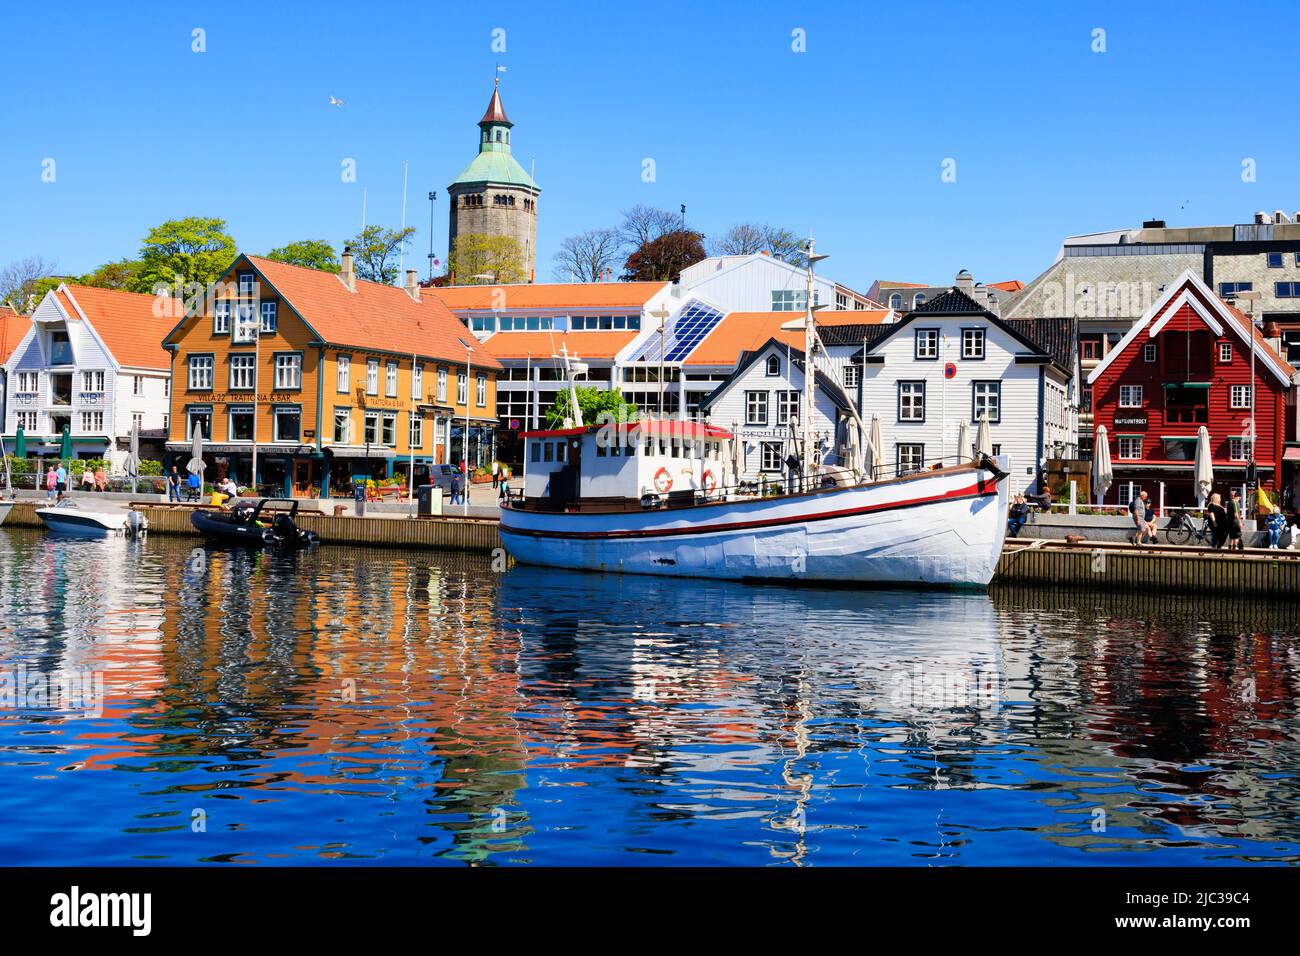 Tradizionale peschereccio norvegese ormeggiato nel porto di Stavanger. I vecchi magazzini di banchina sono ora ristoranti alla moda, bar e caffetterie., Norvegia. Nella ba Foto Stock